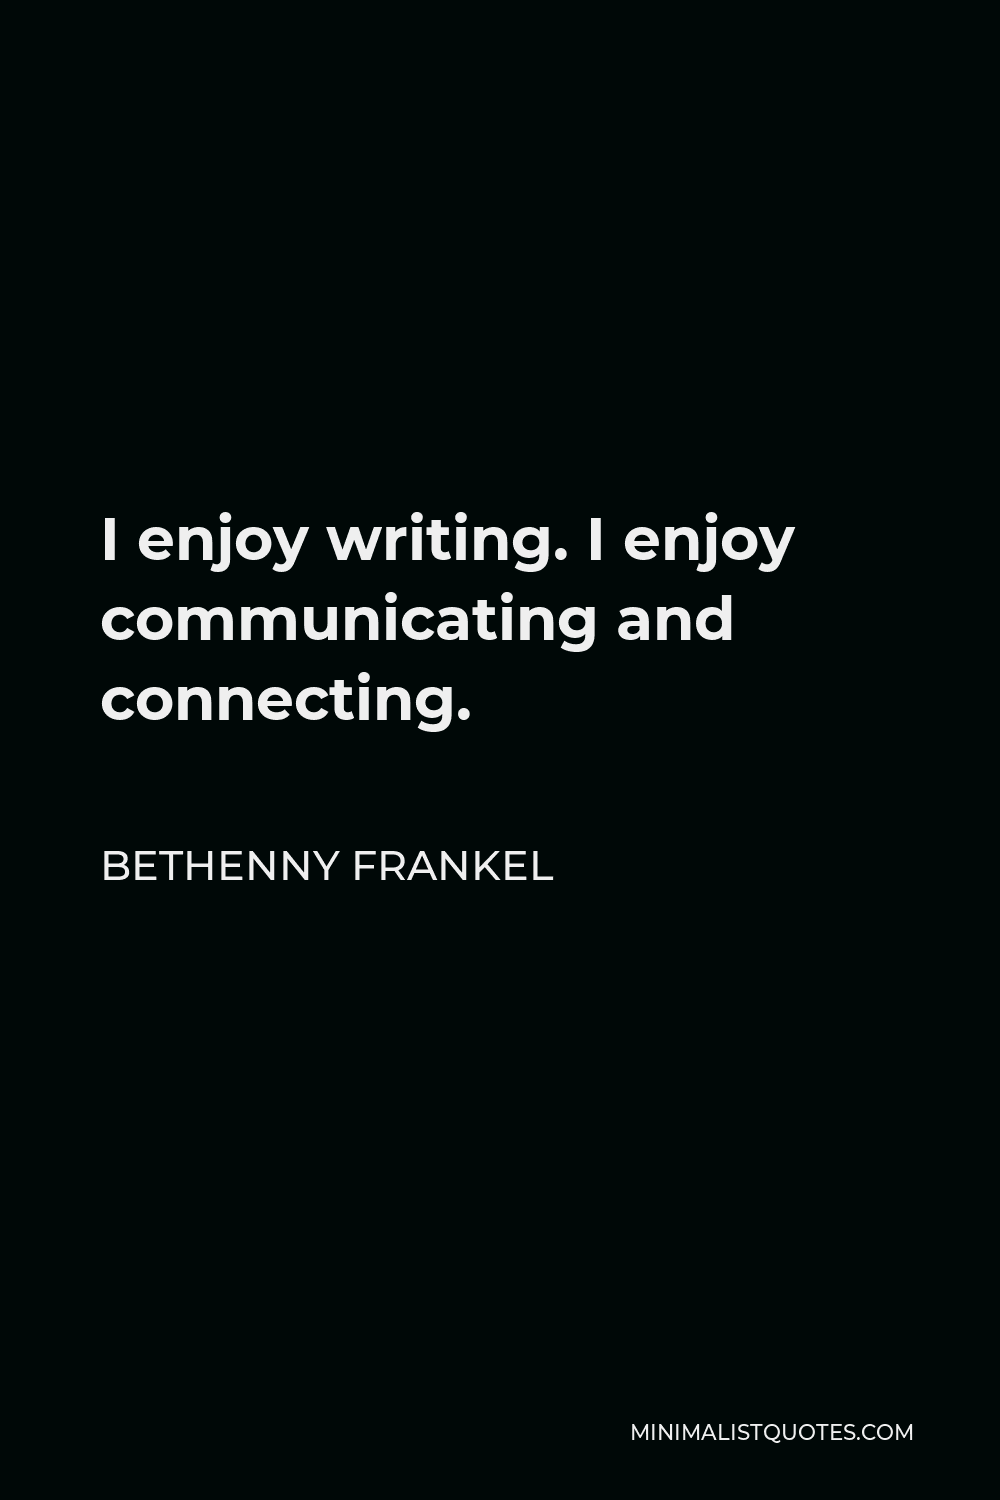 Bethenny Frankel Quote - I enjoy writing. I enjoy communicating and connecting.